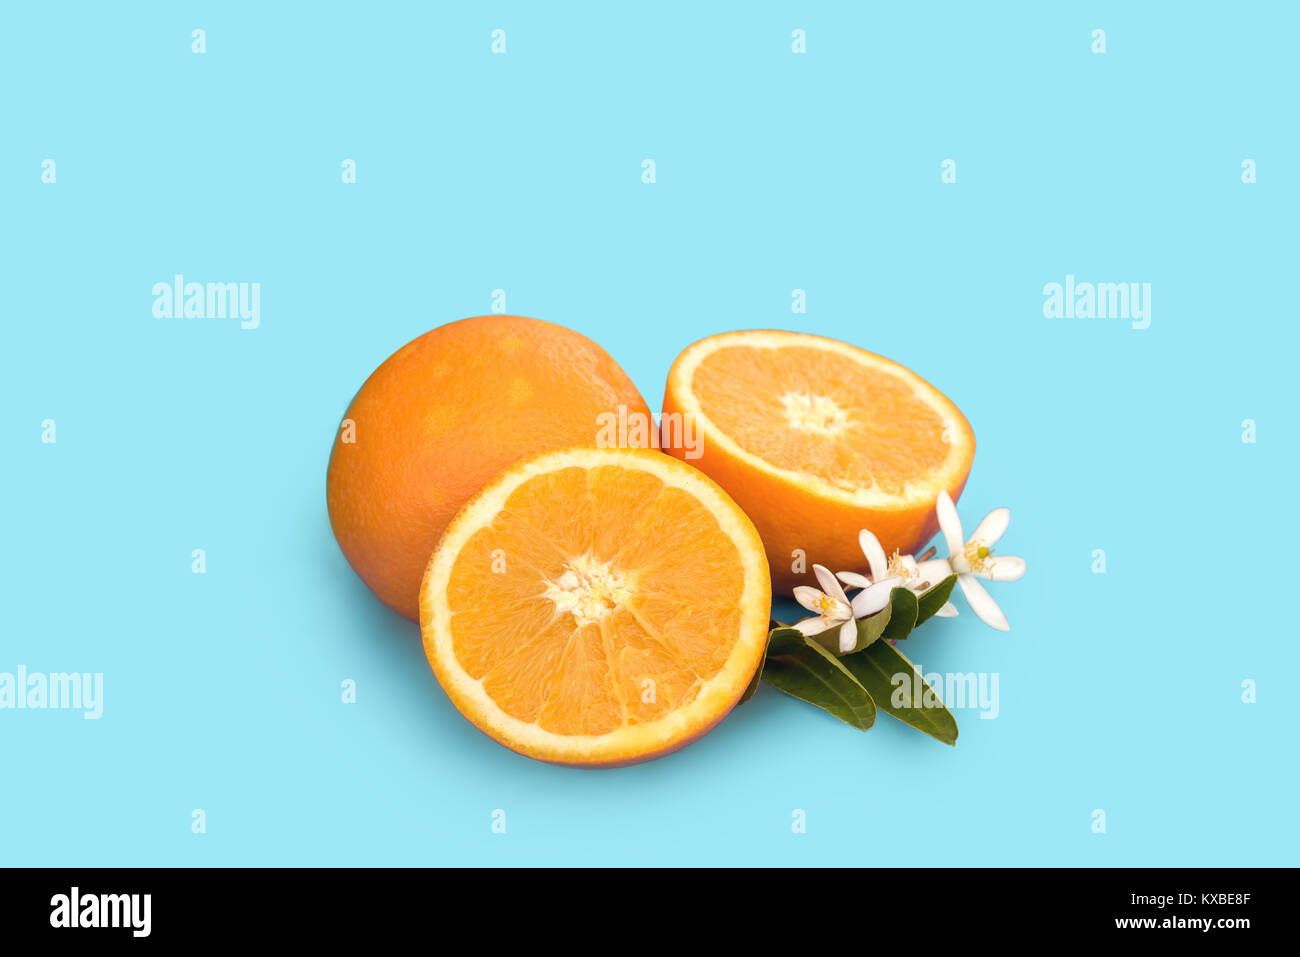 Media naranja fotografías e imágenes de alta resolución - Alamy